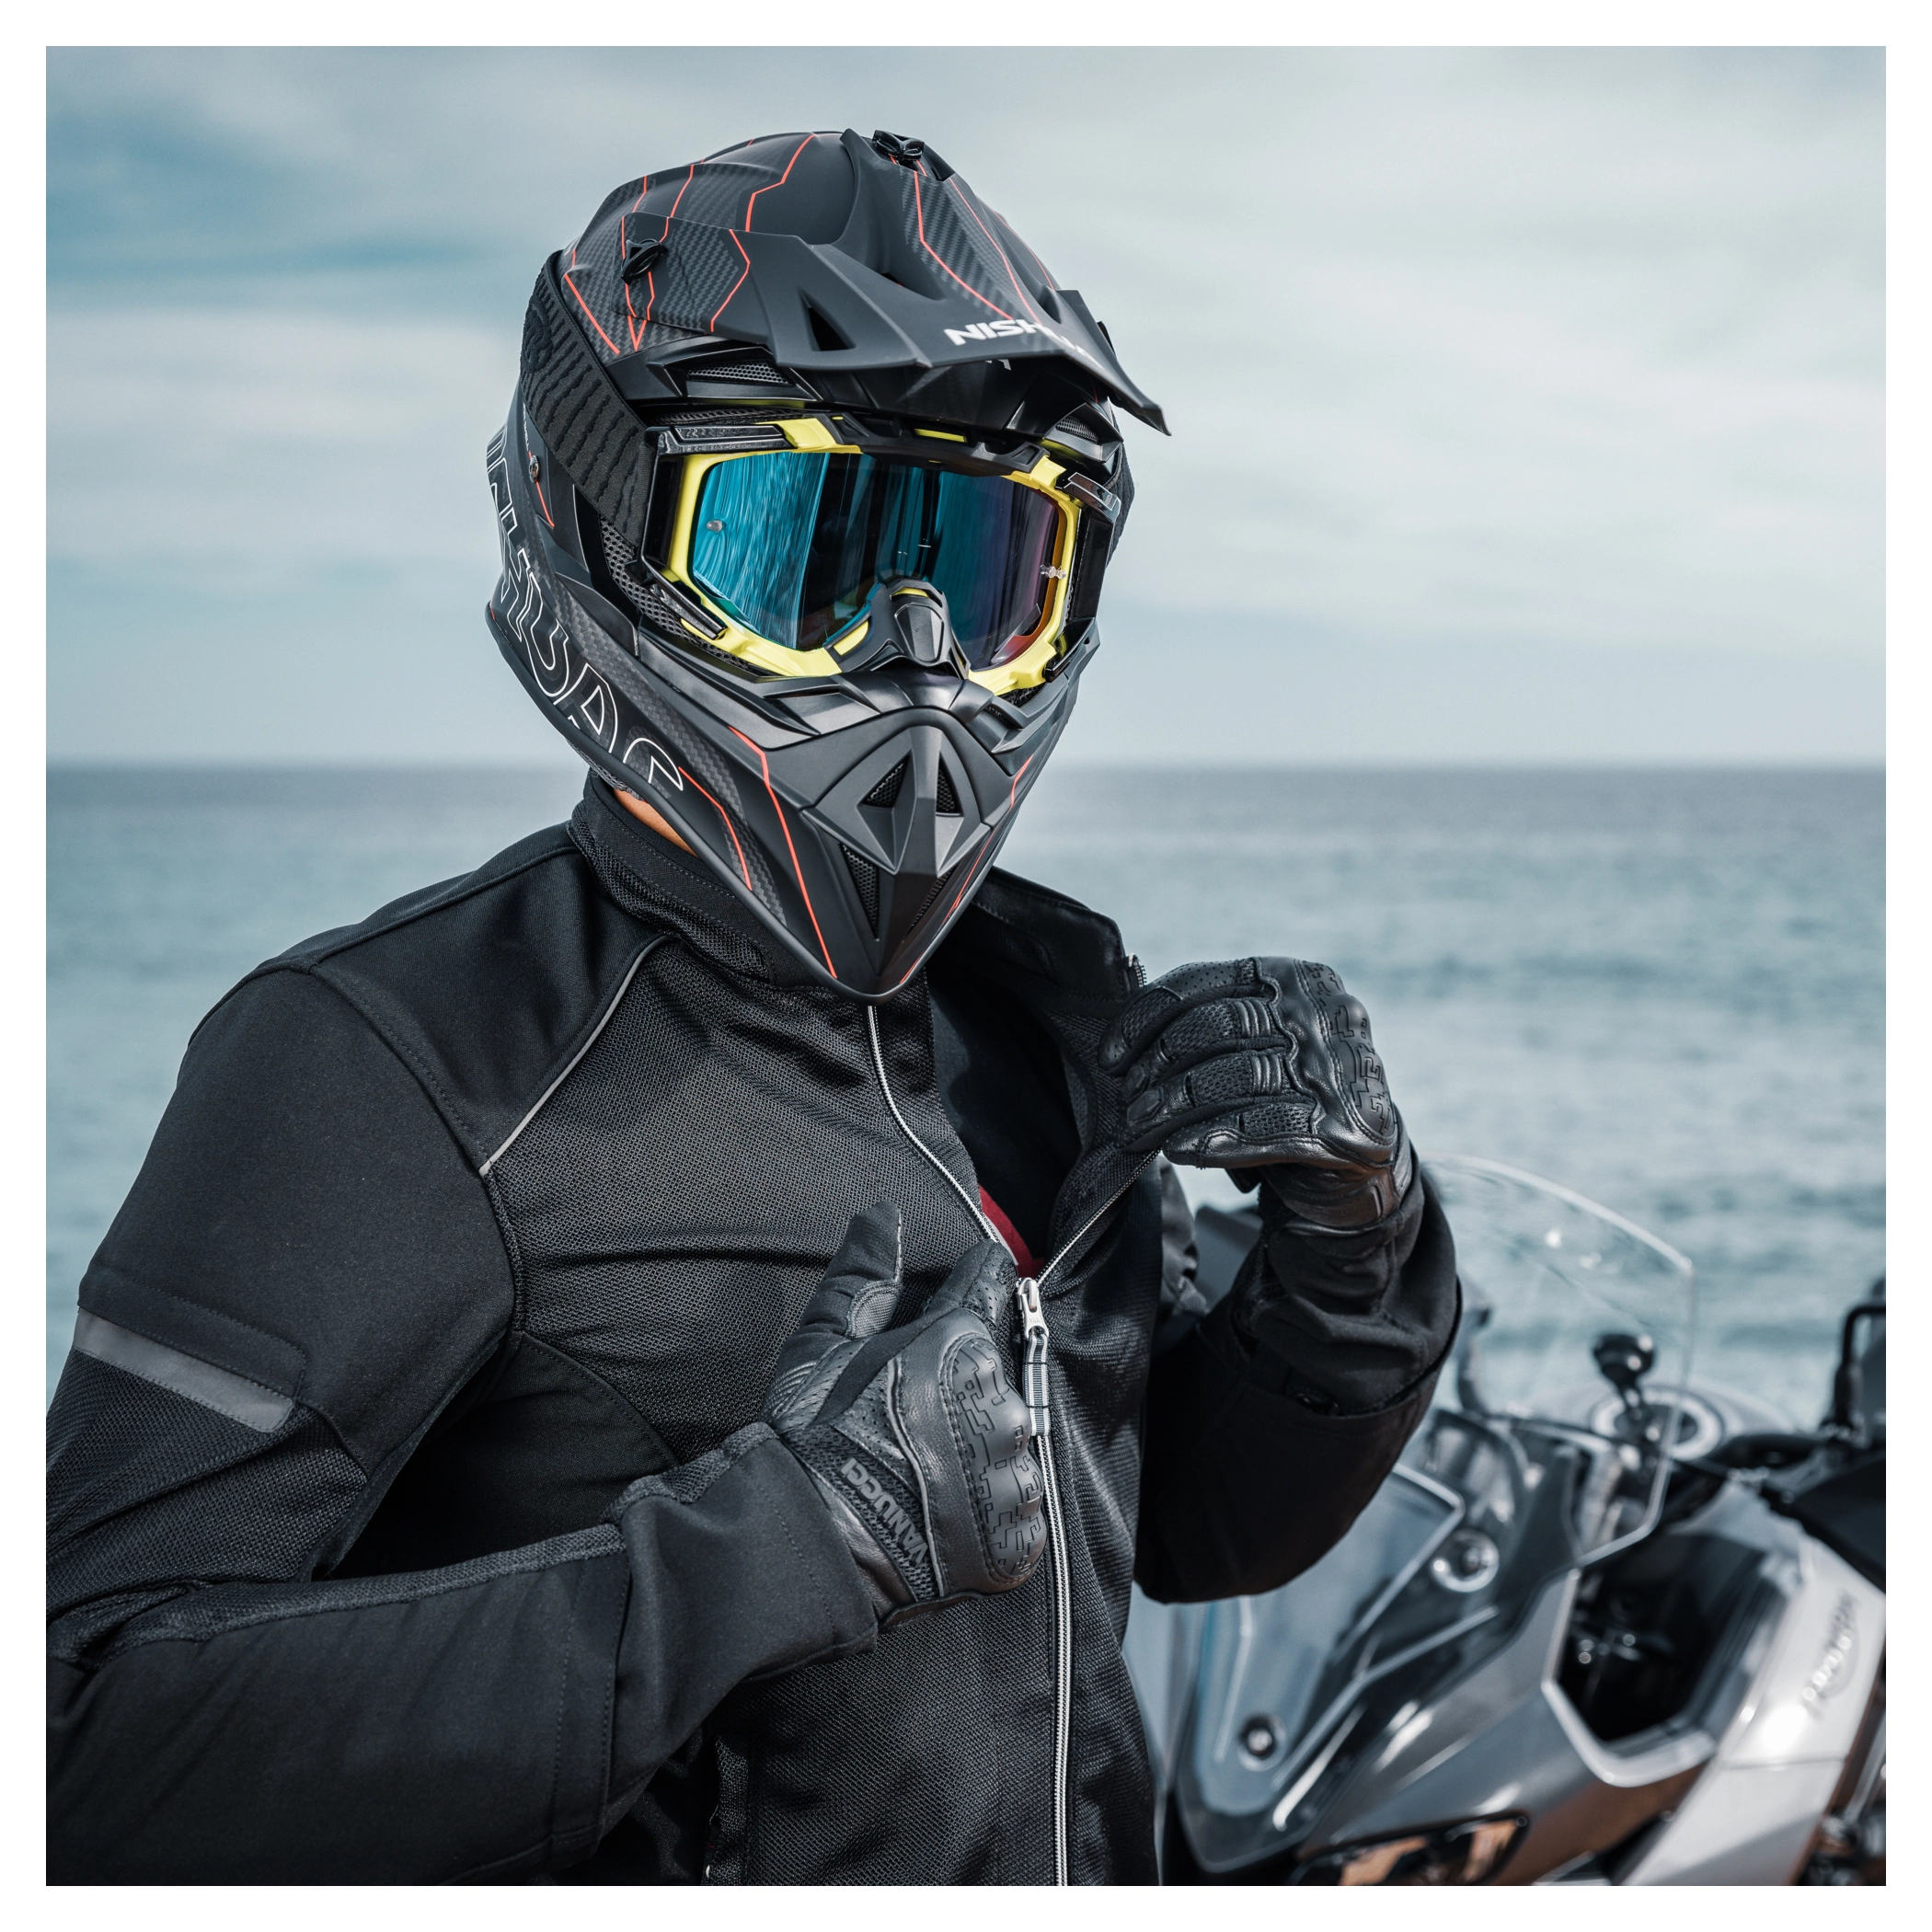 Veste de Protection Moto Dorsal Spine Guard Moto Motocross Armure Armure  Racing Vêtements Protection Gear, Noir : : Auto et Moto